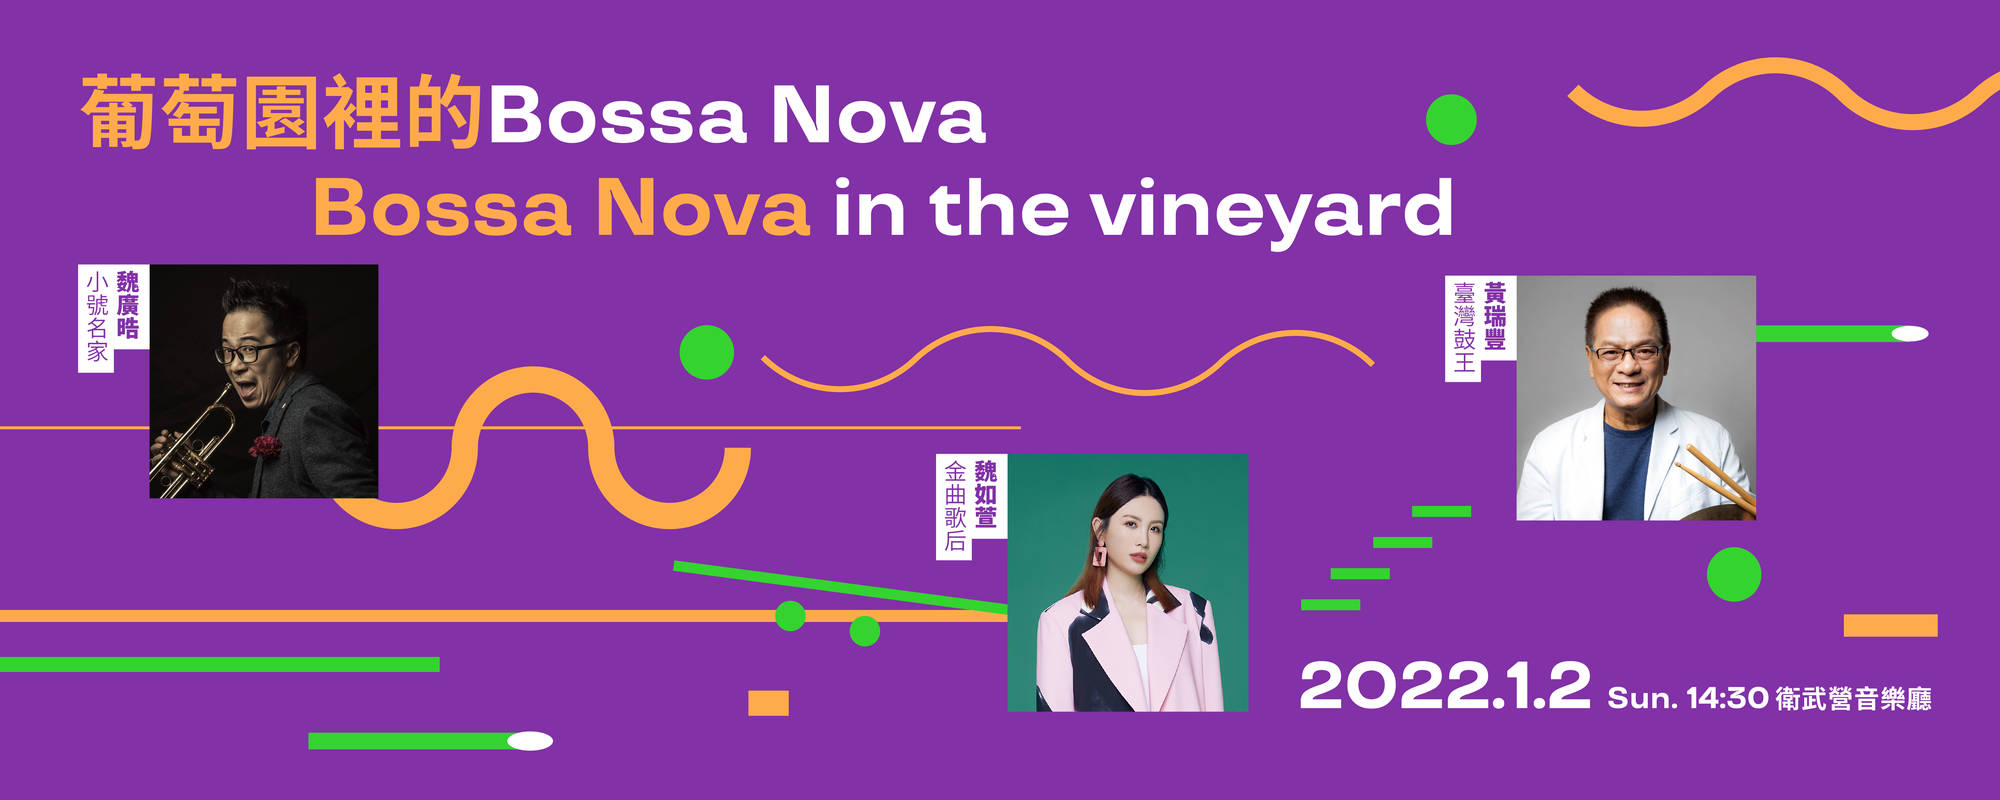 《葡萄園裡的Bossa Nova》